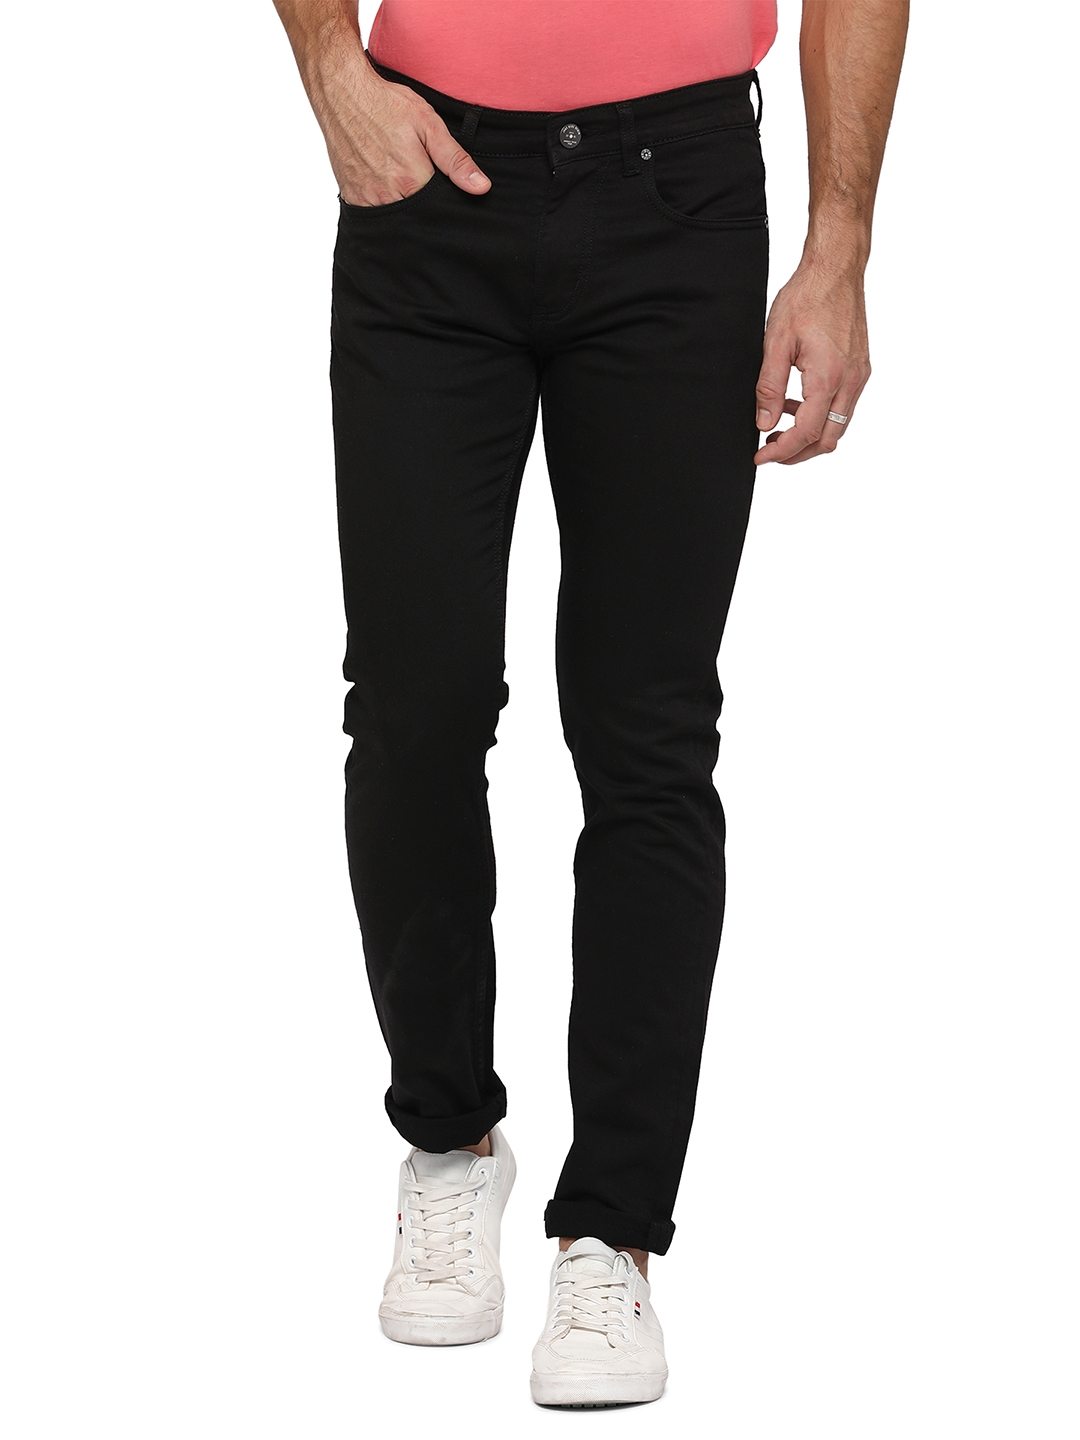 JadeBlue Sport | Black Solid Jeans (JBD-SN-229 BLACK)